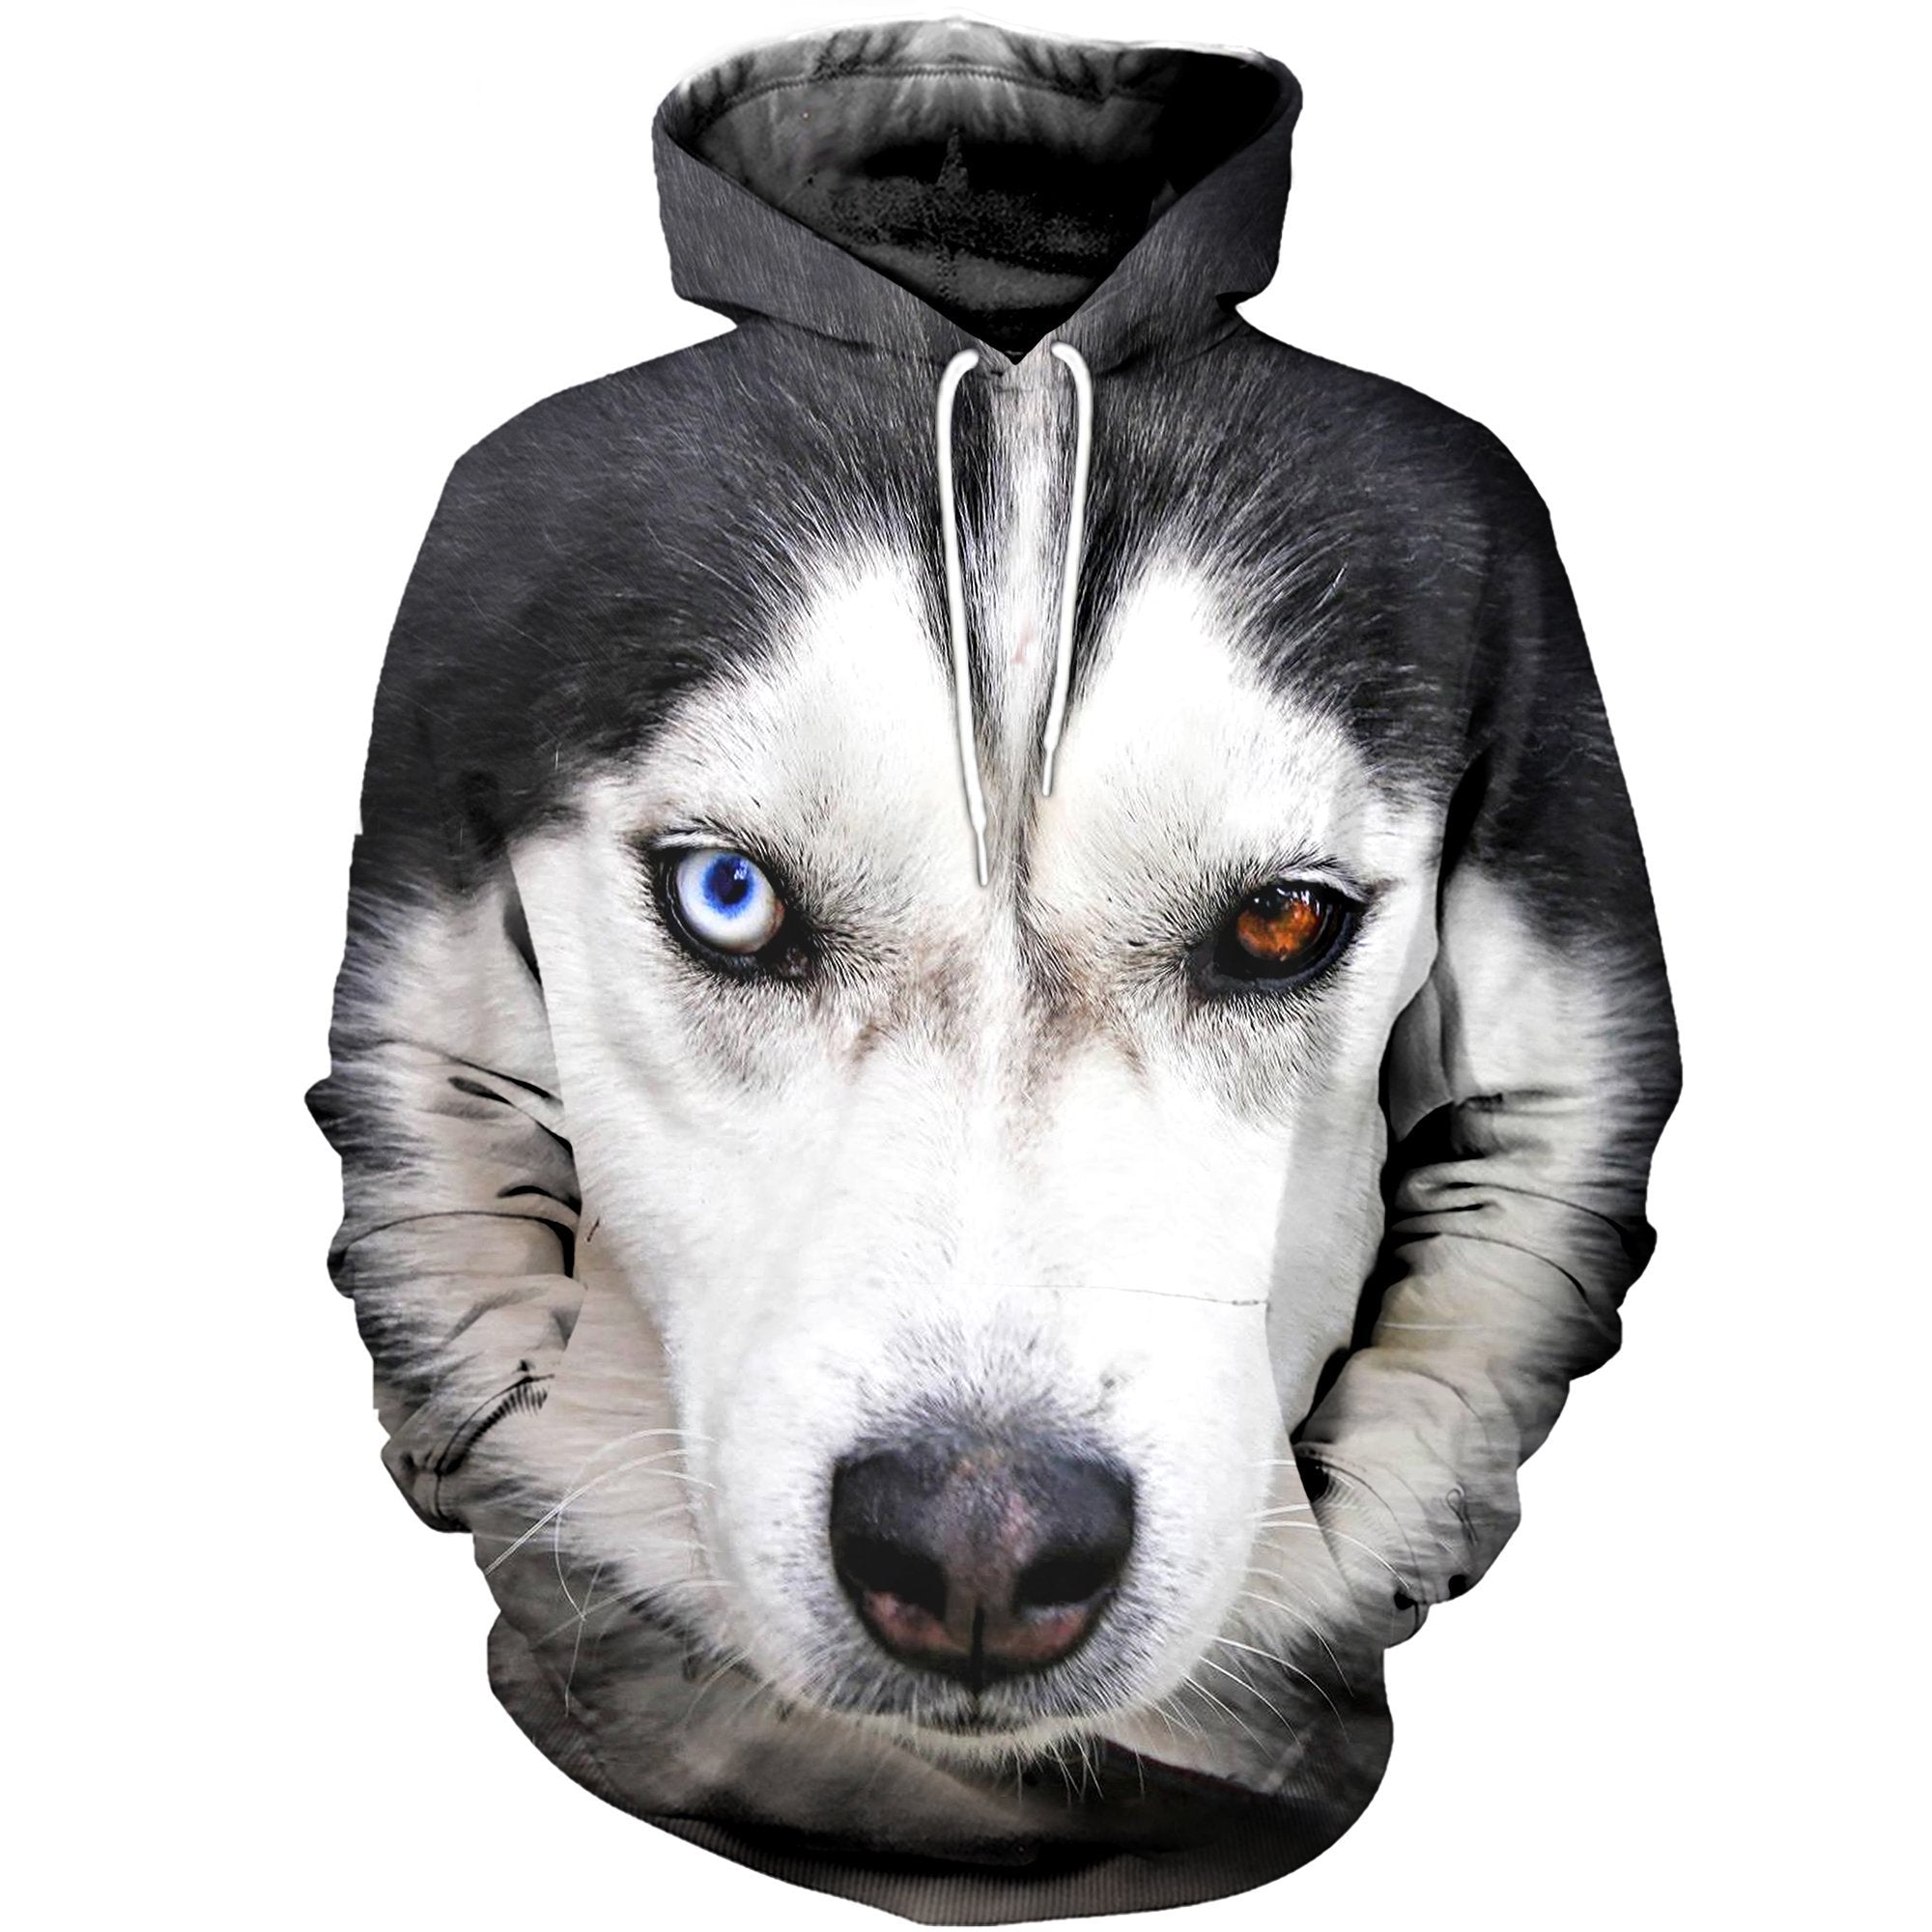 husky dog clothes